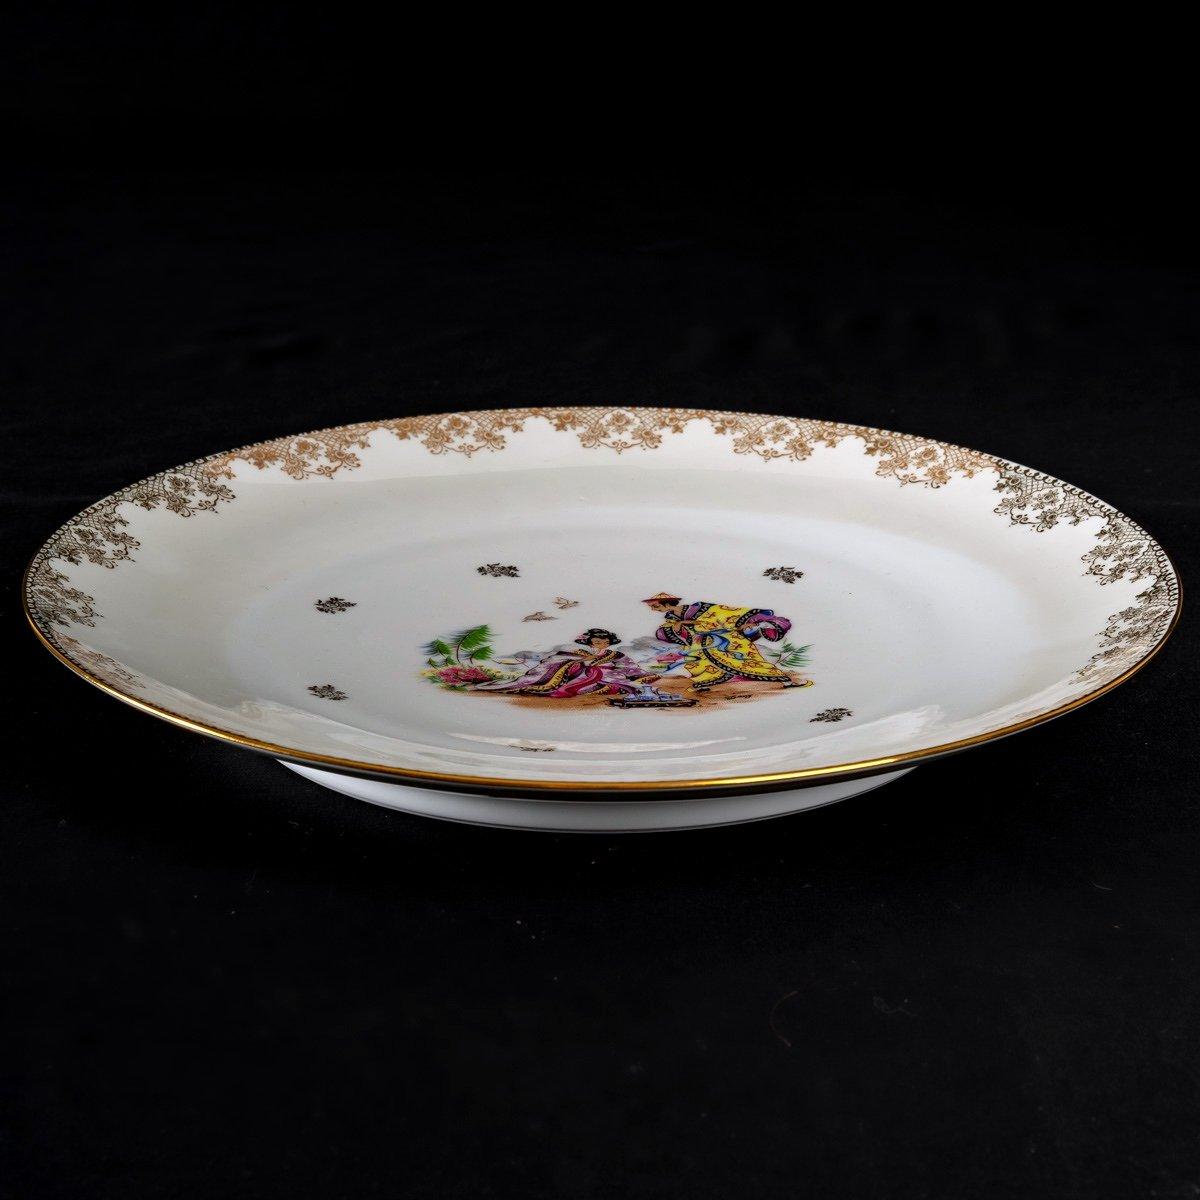 Ravissant service français vintage en porcelaine de Limoges, collection 